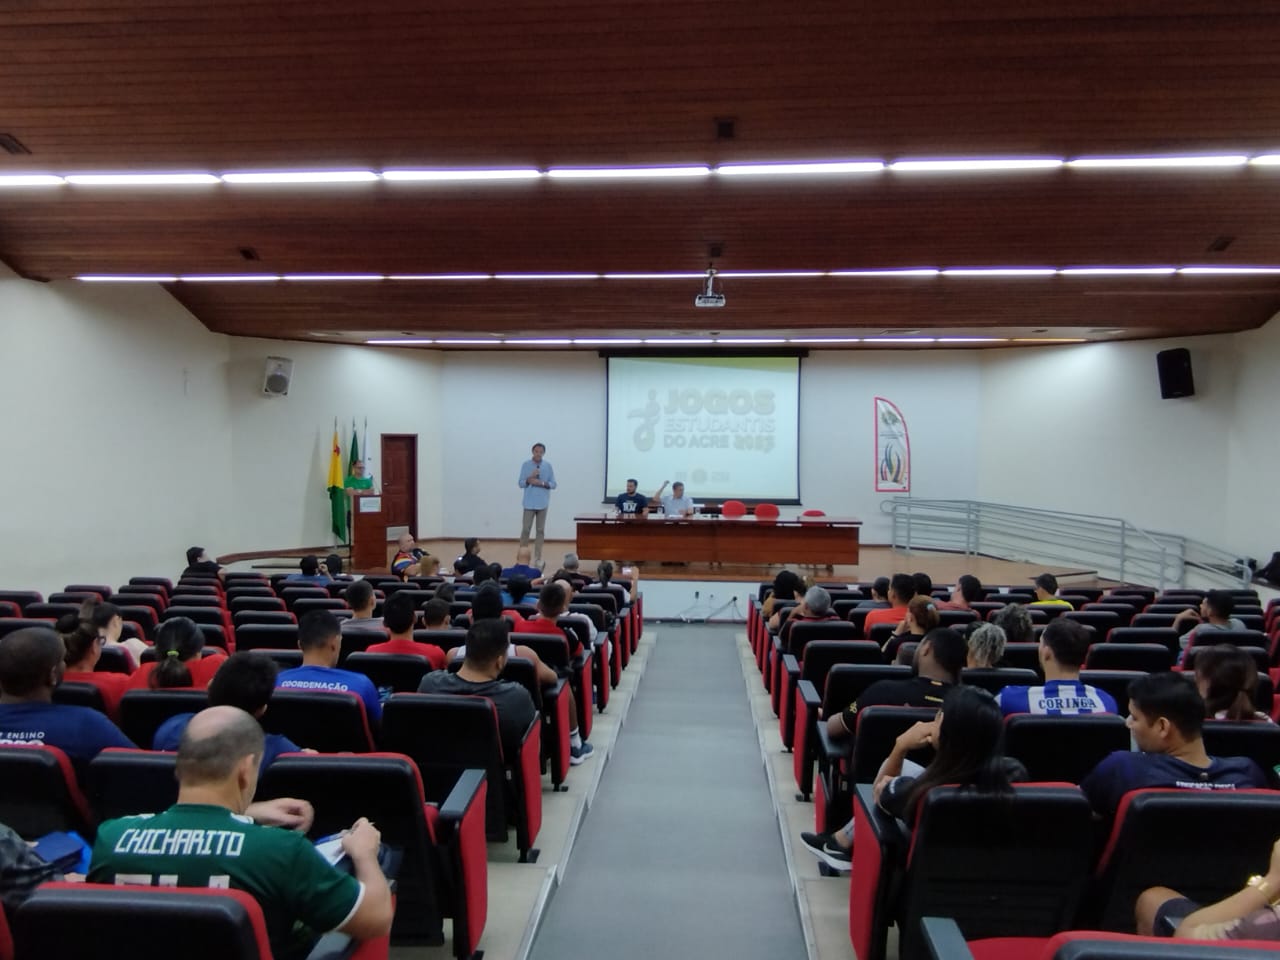 Congresso Técnico dos Jogos Escolares 2015 - Etapa Municipal.